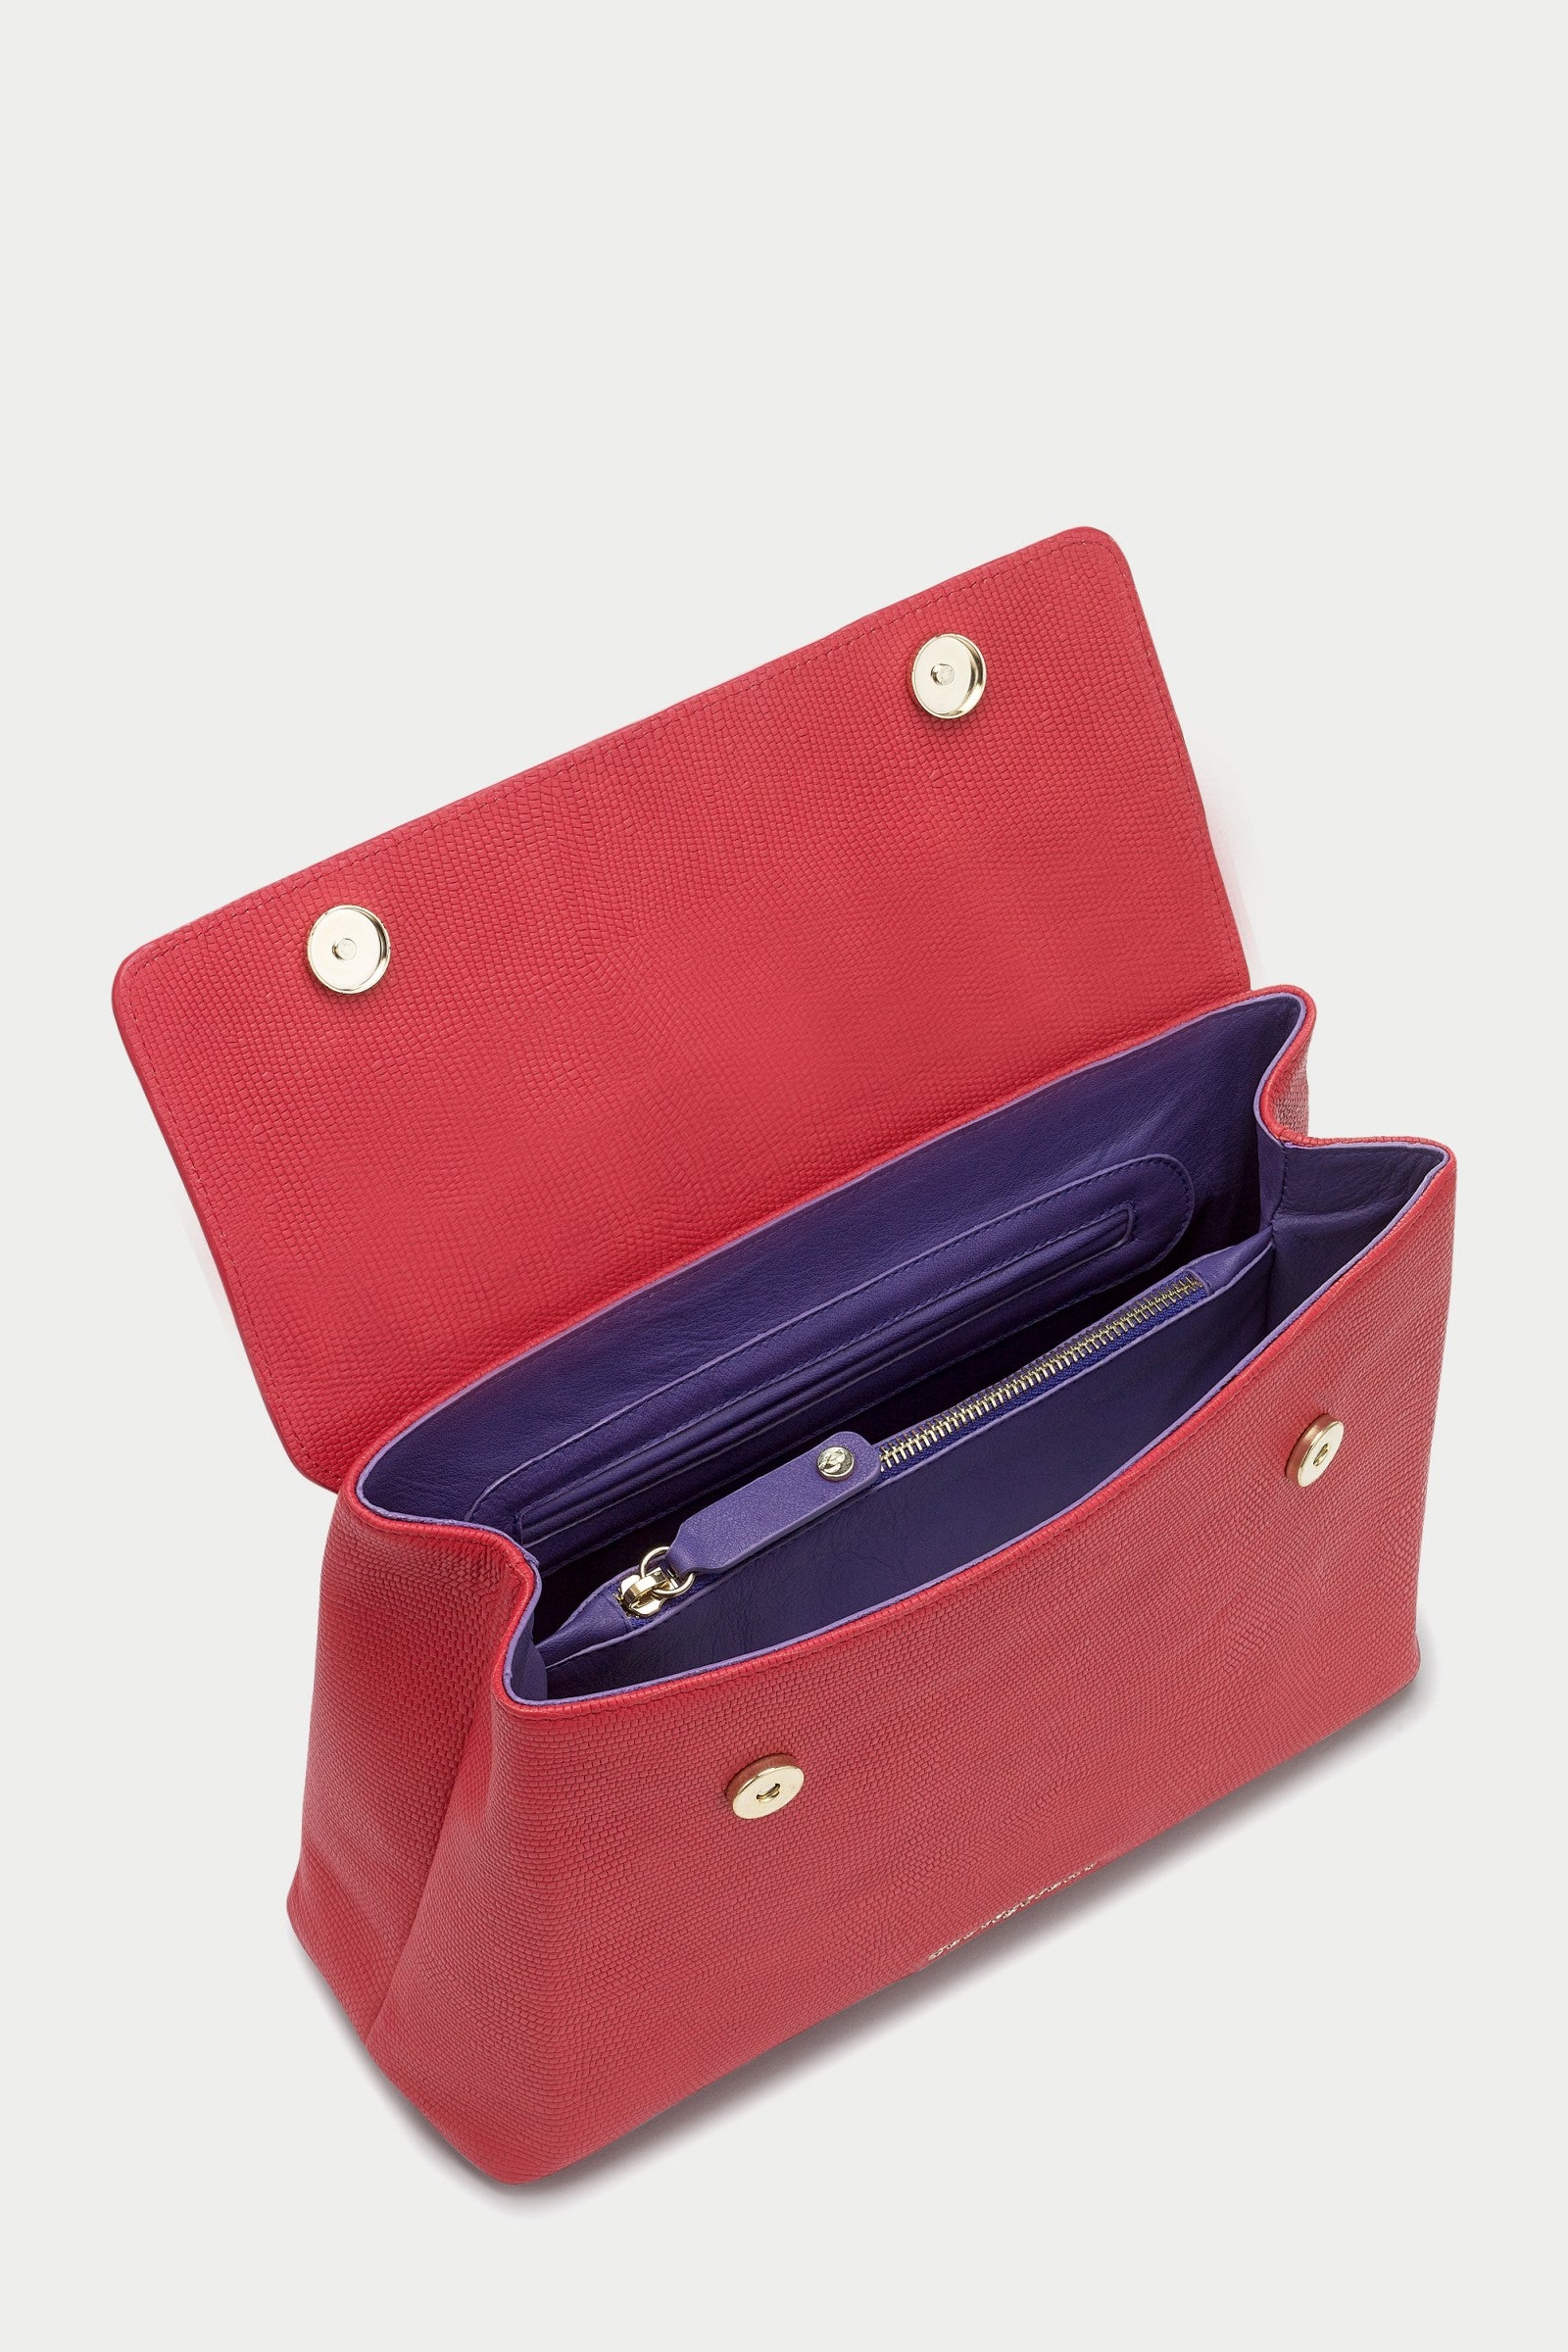 Briella LIPSTICK RED Leather Handbag